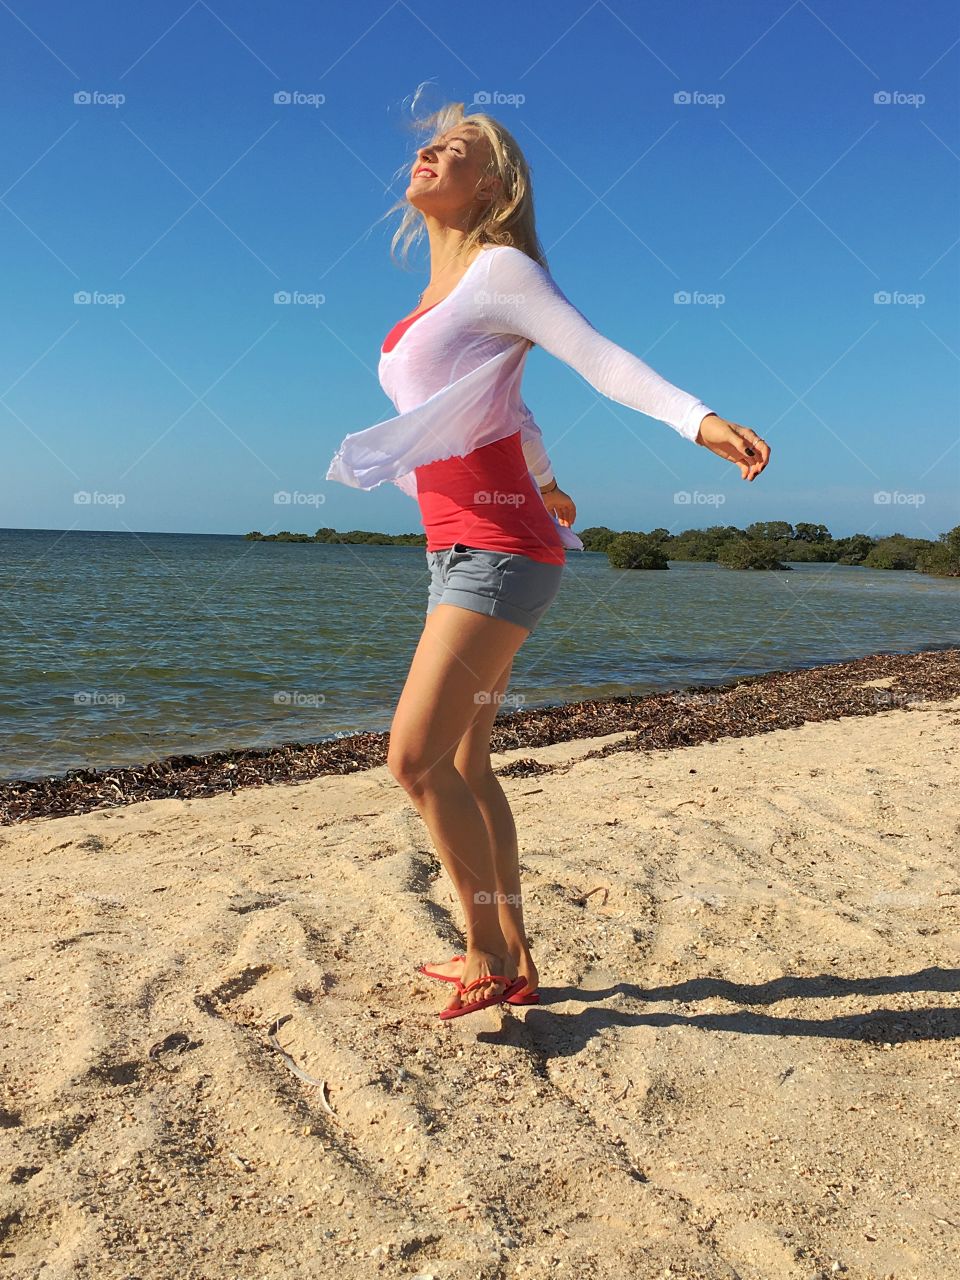 Joyful woman at beach